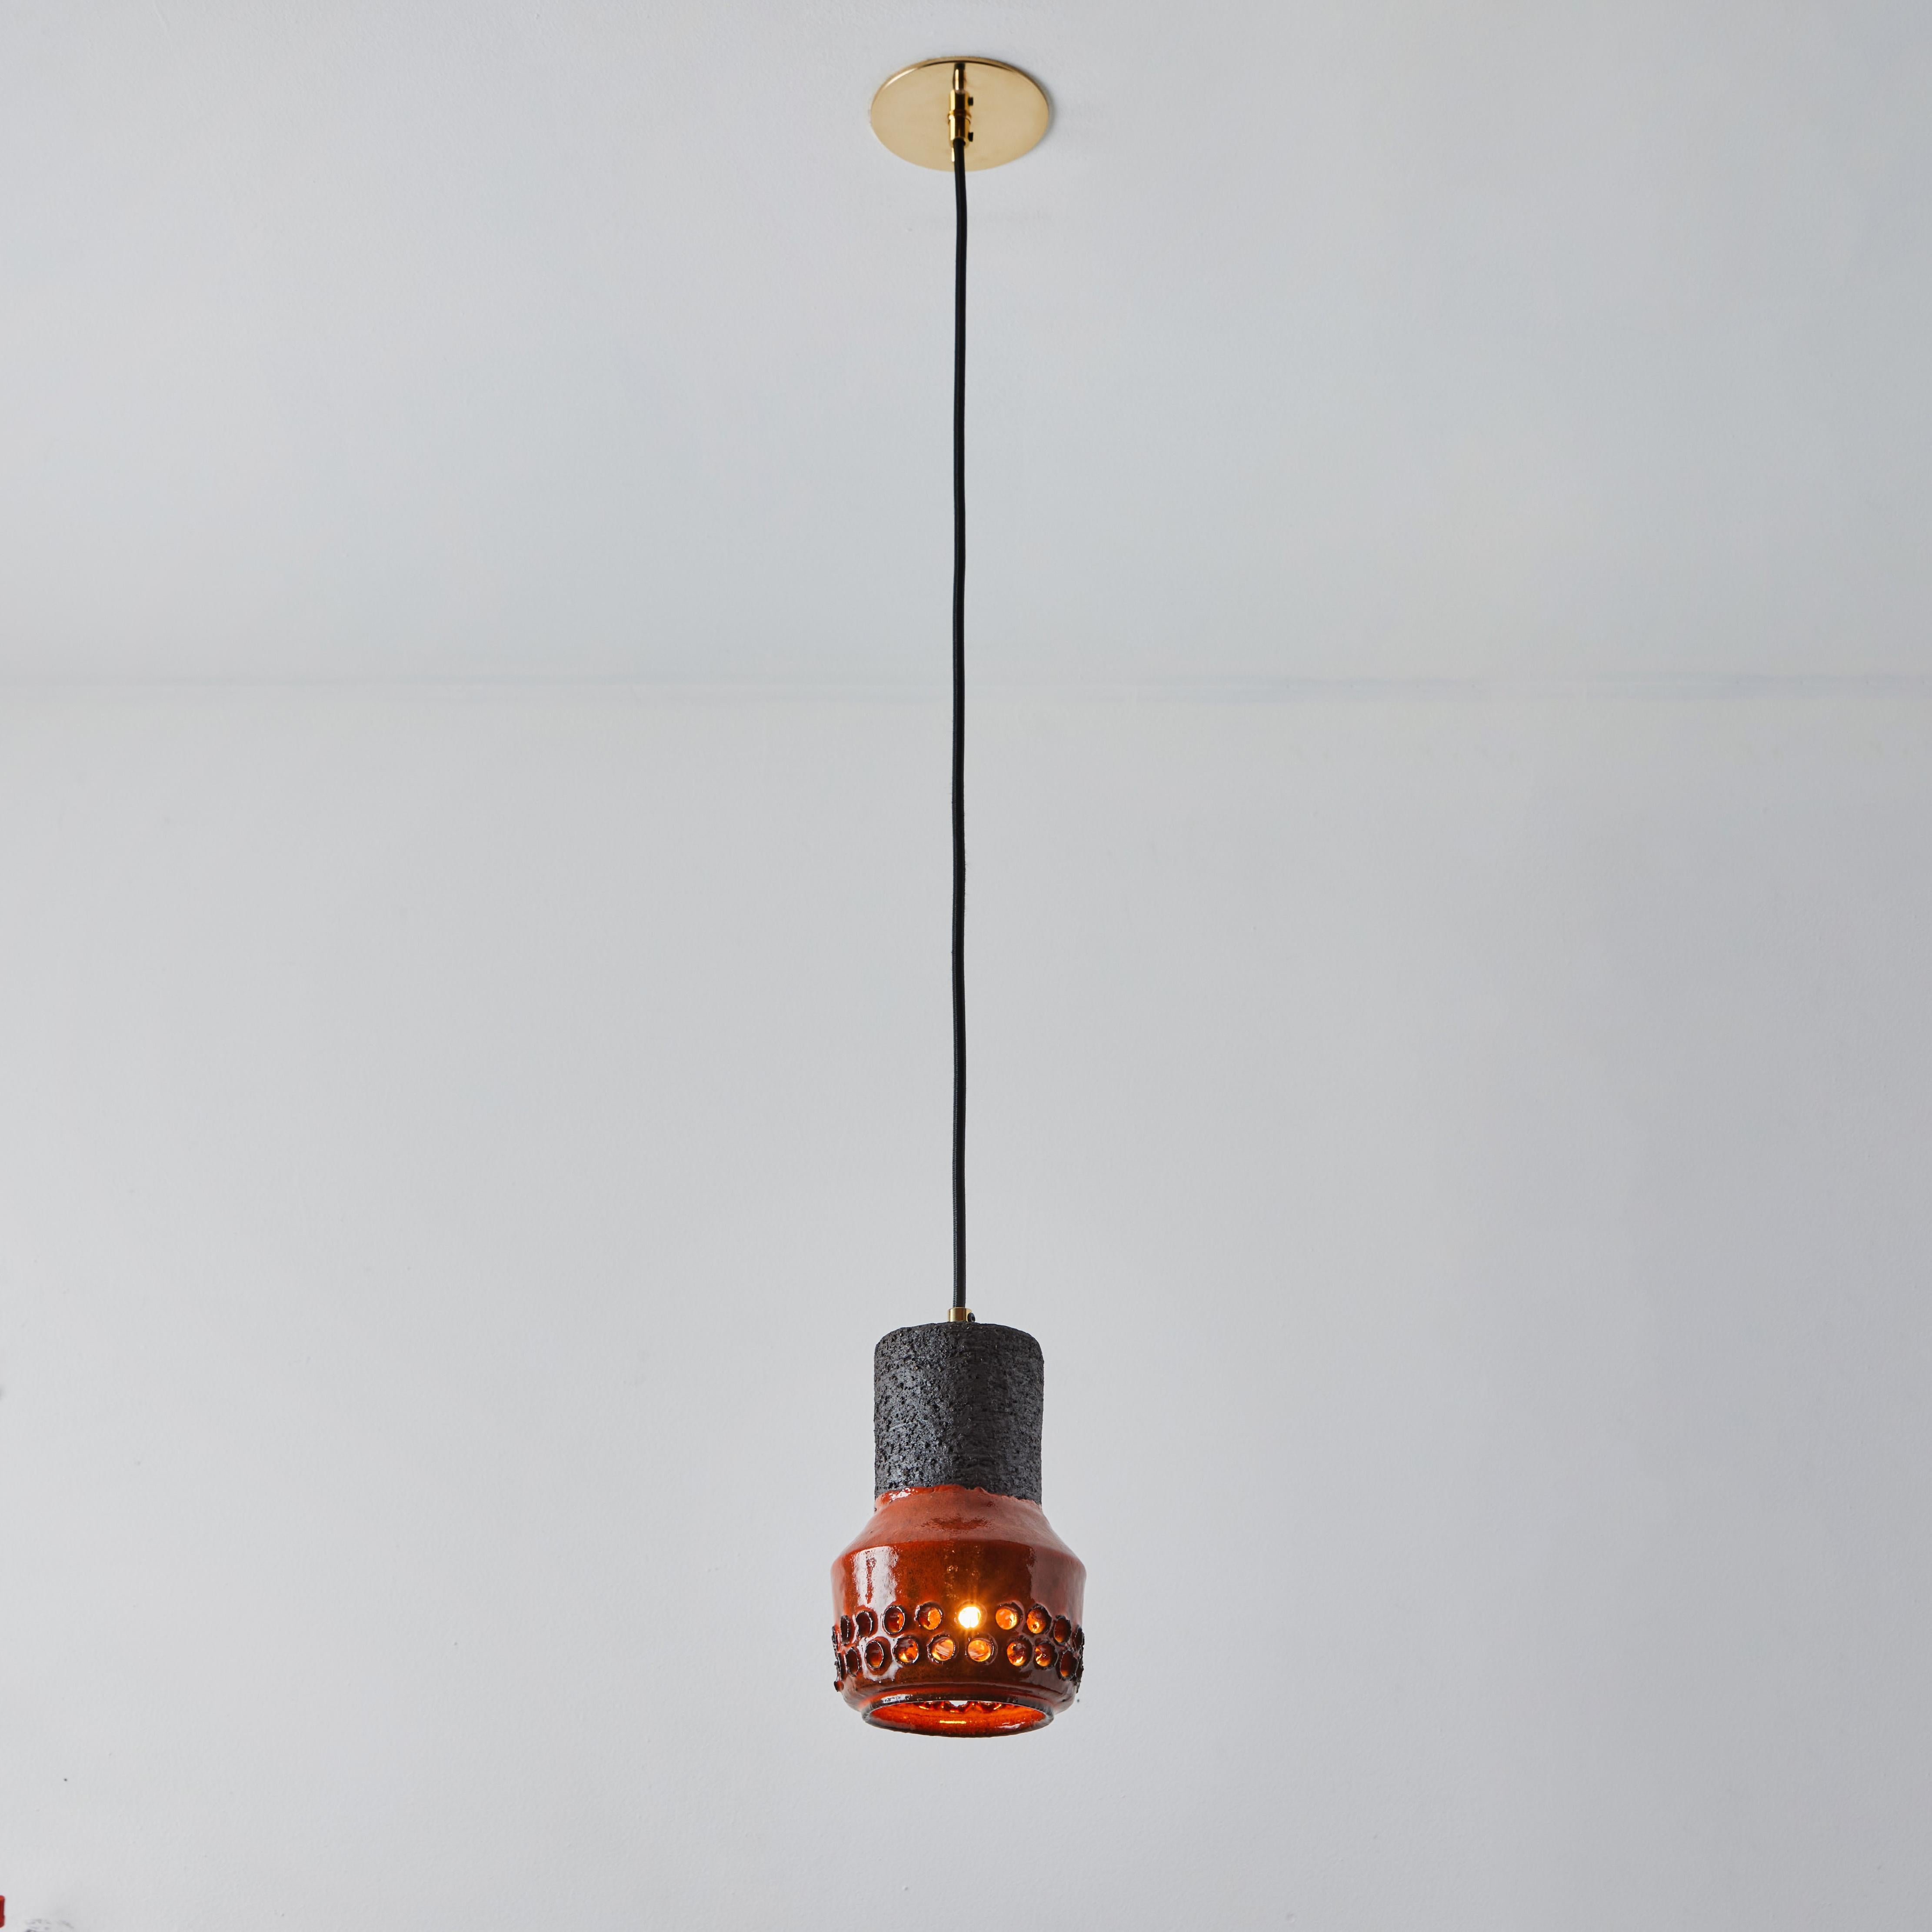 Lampe à suspension Bitossi en céramique Aldo Londi des années 1950 pour le Raymor italien. Cette lampe rare et sculpturale en céramique italienne est exécutée dans une glaçure auburn chaude avec des perforations circulaires géométriques. 

Convient